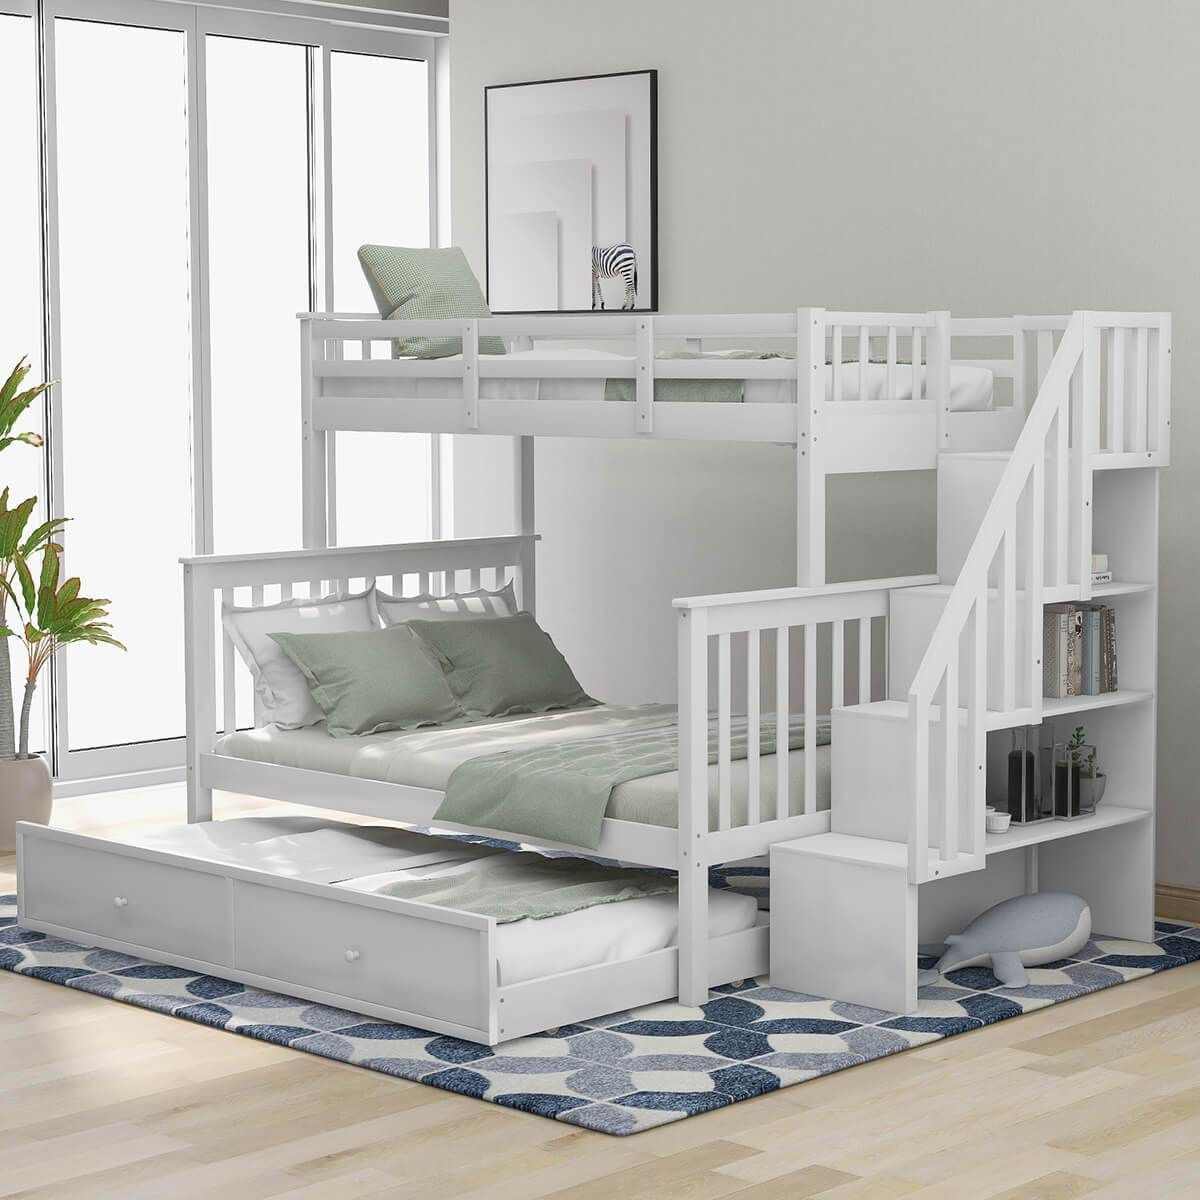 Giường tầng cho phòng ngủ chung bố mẹ va con